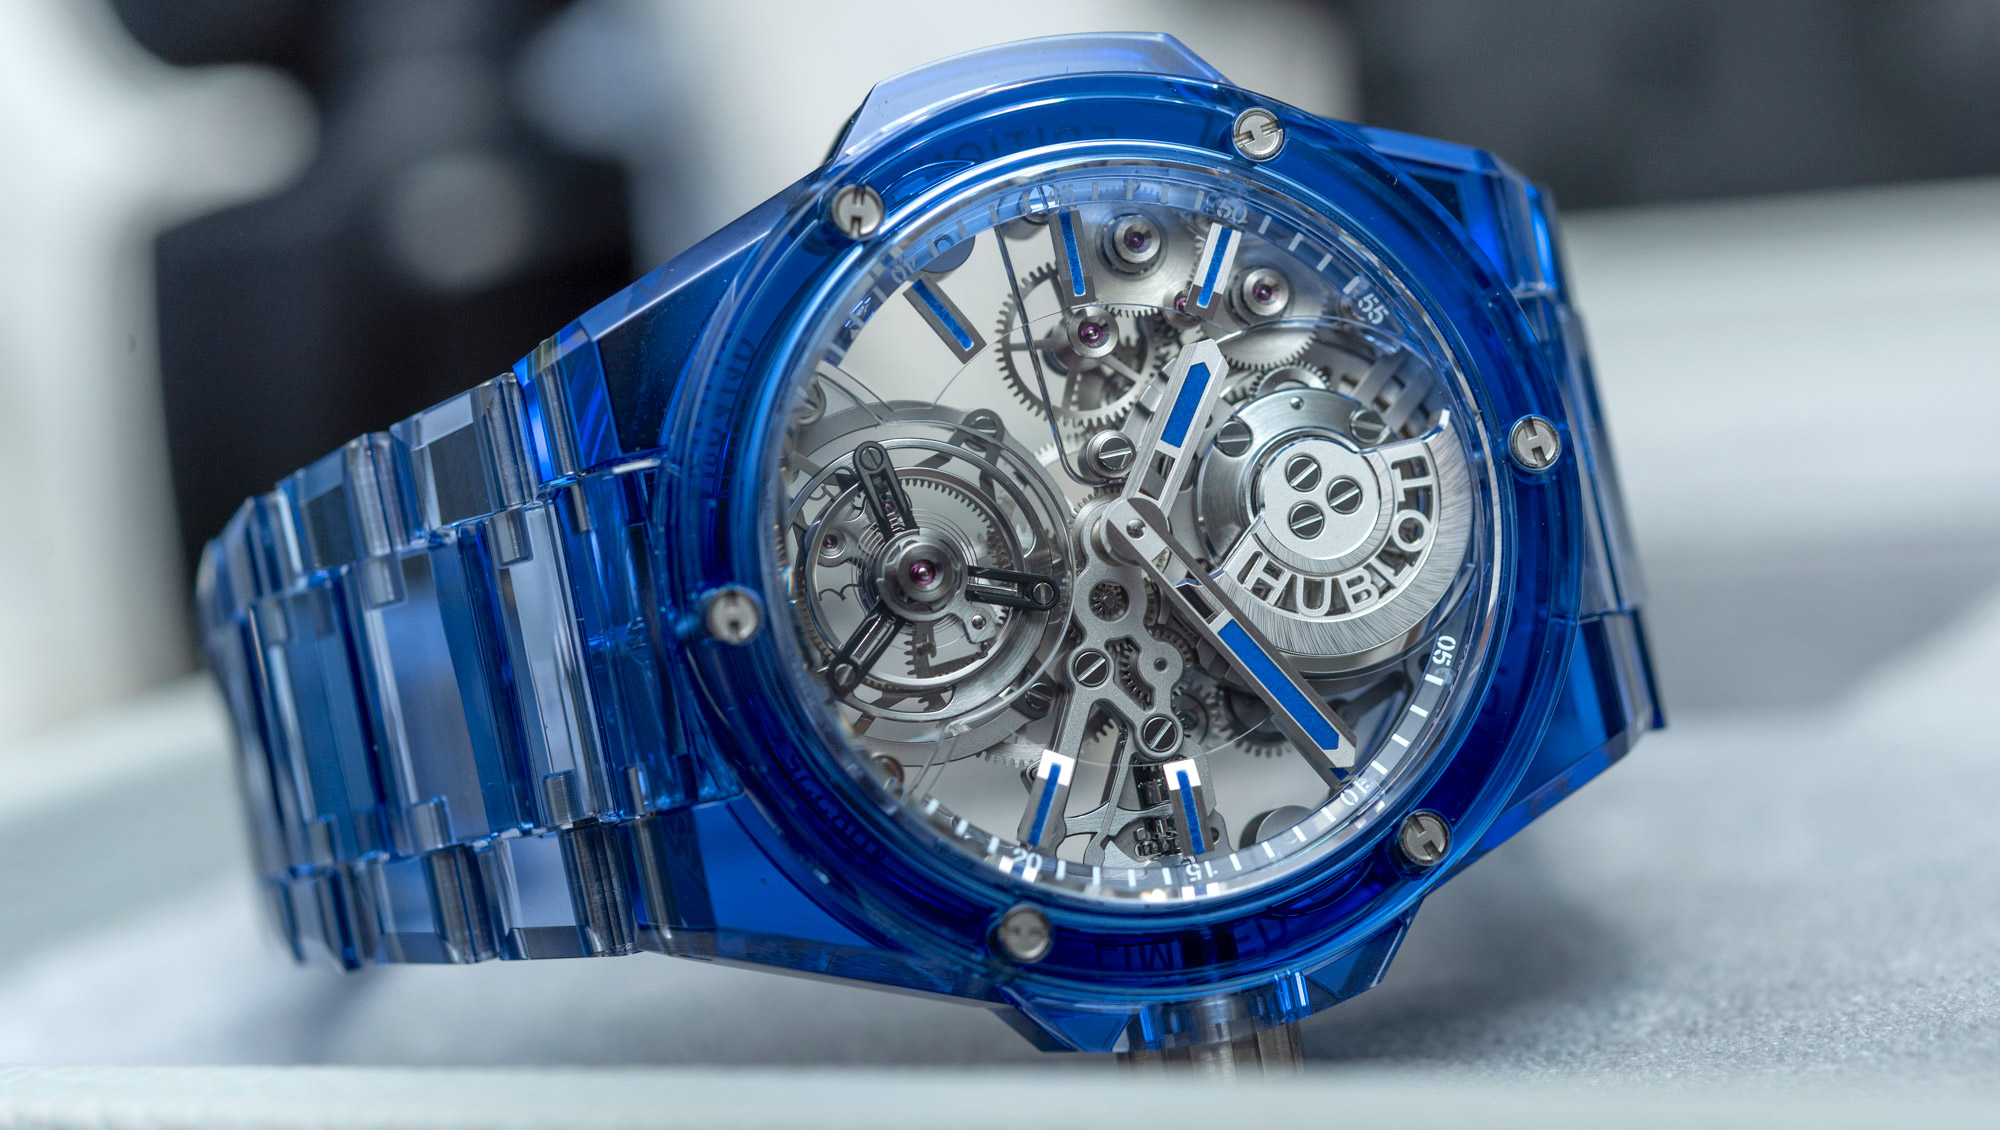 宇舶大爆炸系列集成陀飞轮全蓝宝石腕表-其价值500,000美元